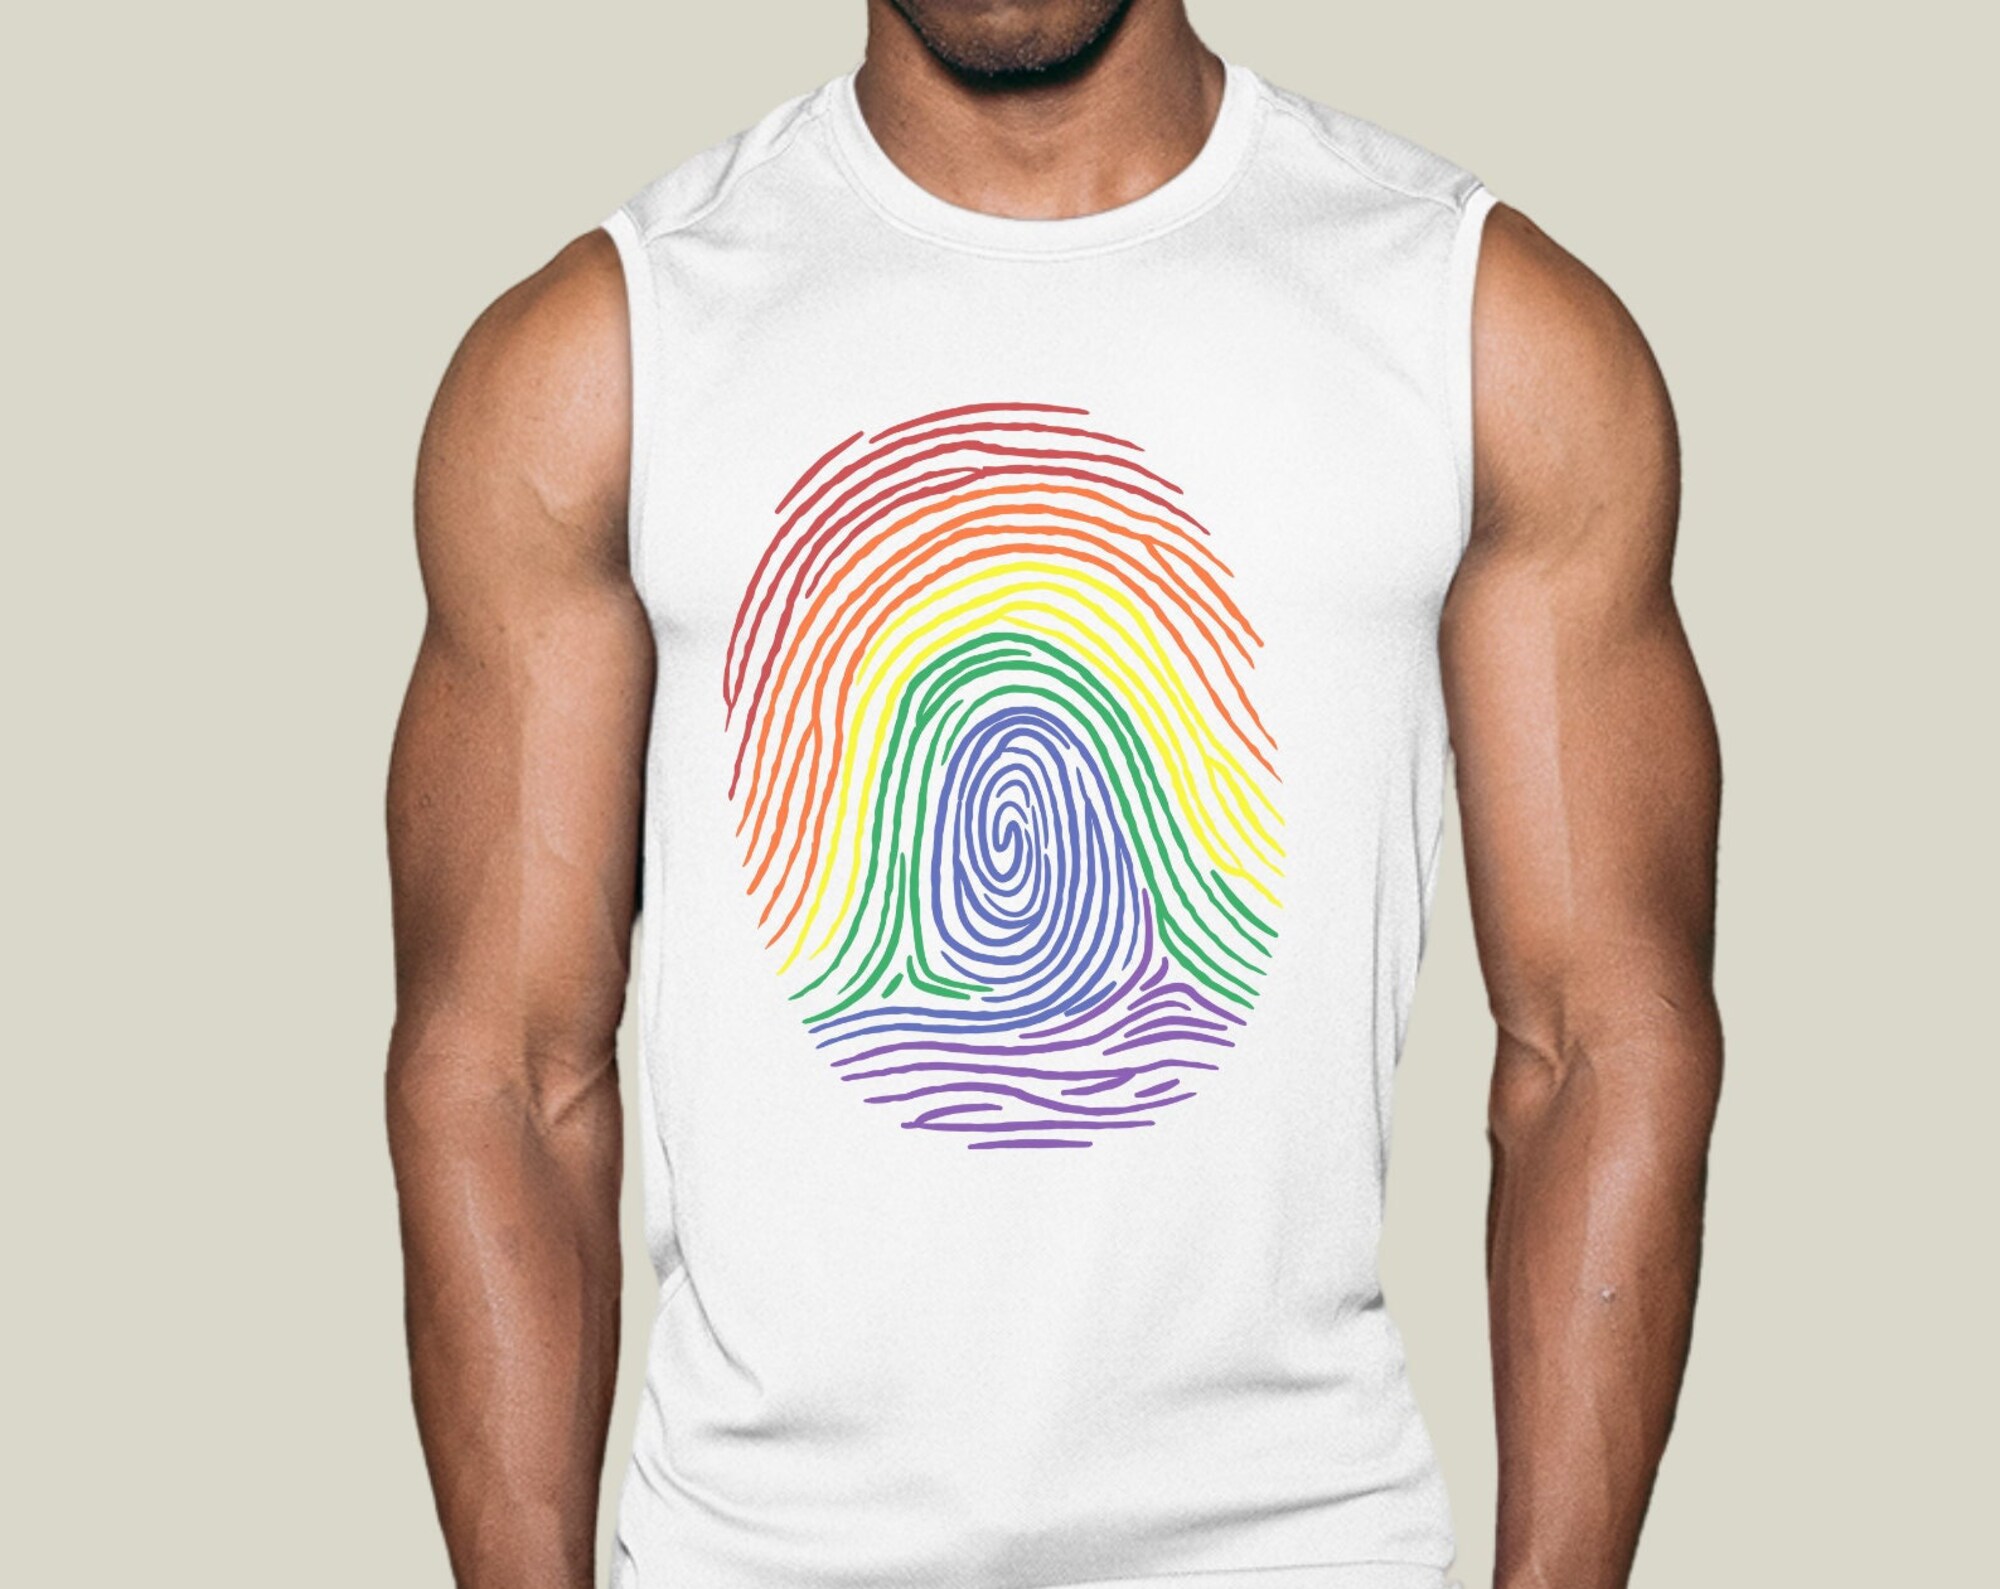 Discover Pride Muscle Top, Digital Print Shirt, Pride Tank Top